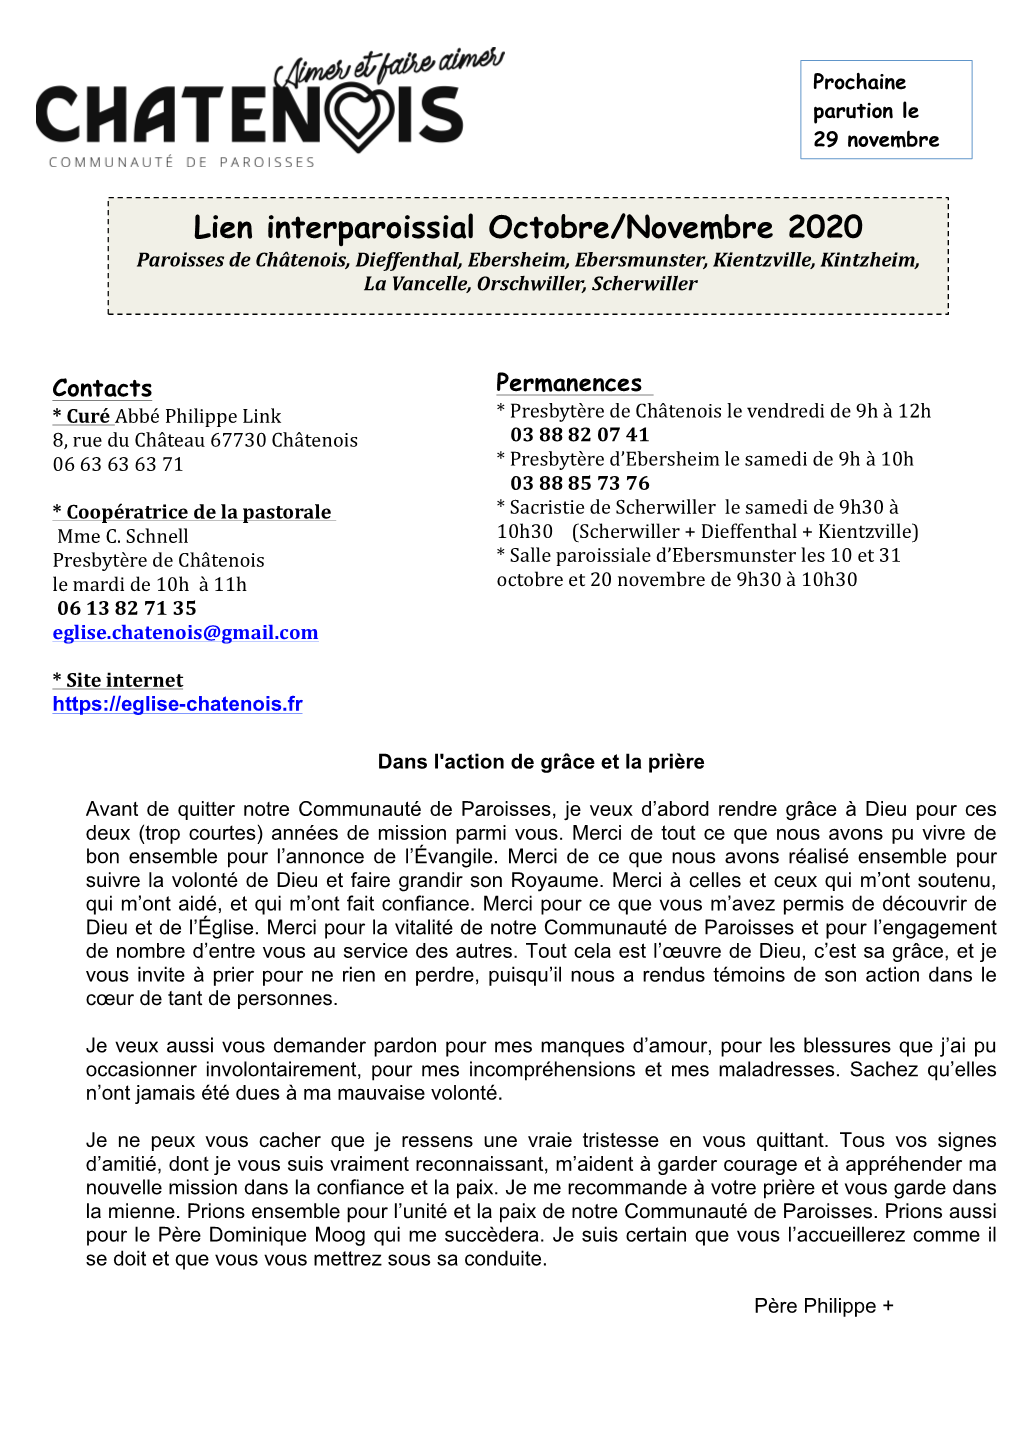 Lien Interparoissial Octobre/Novembre 2020